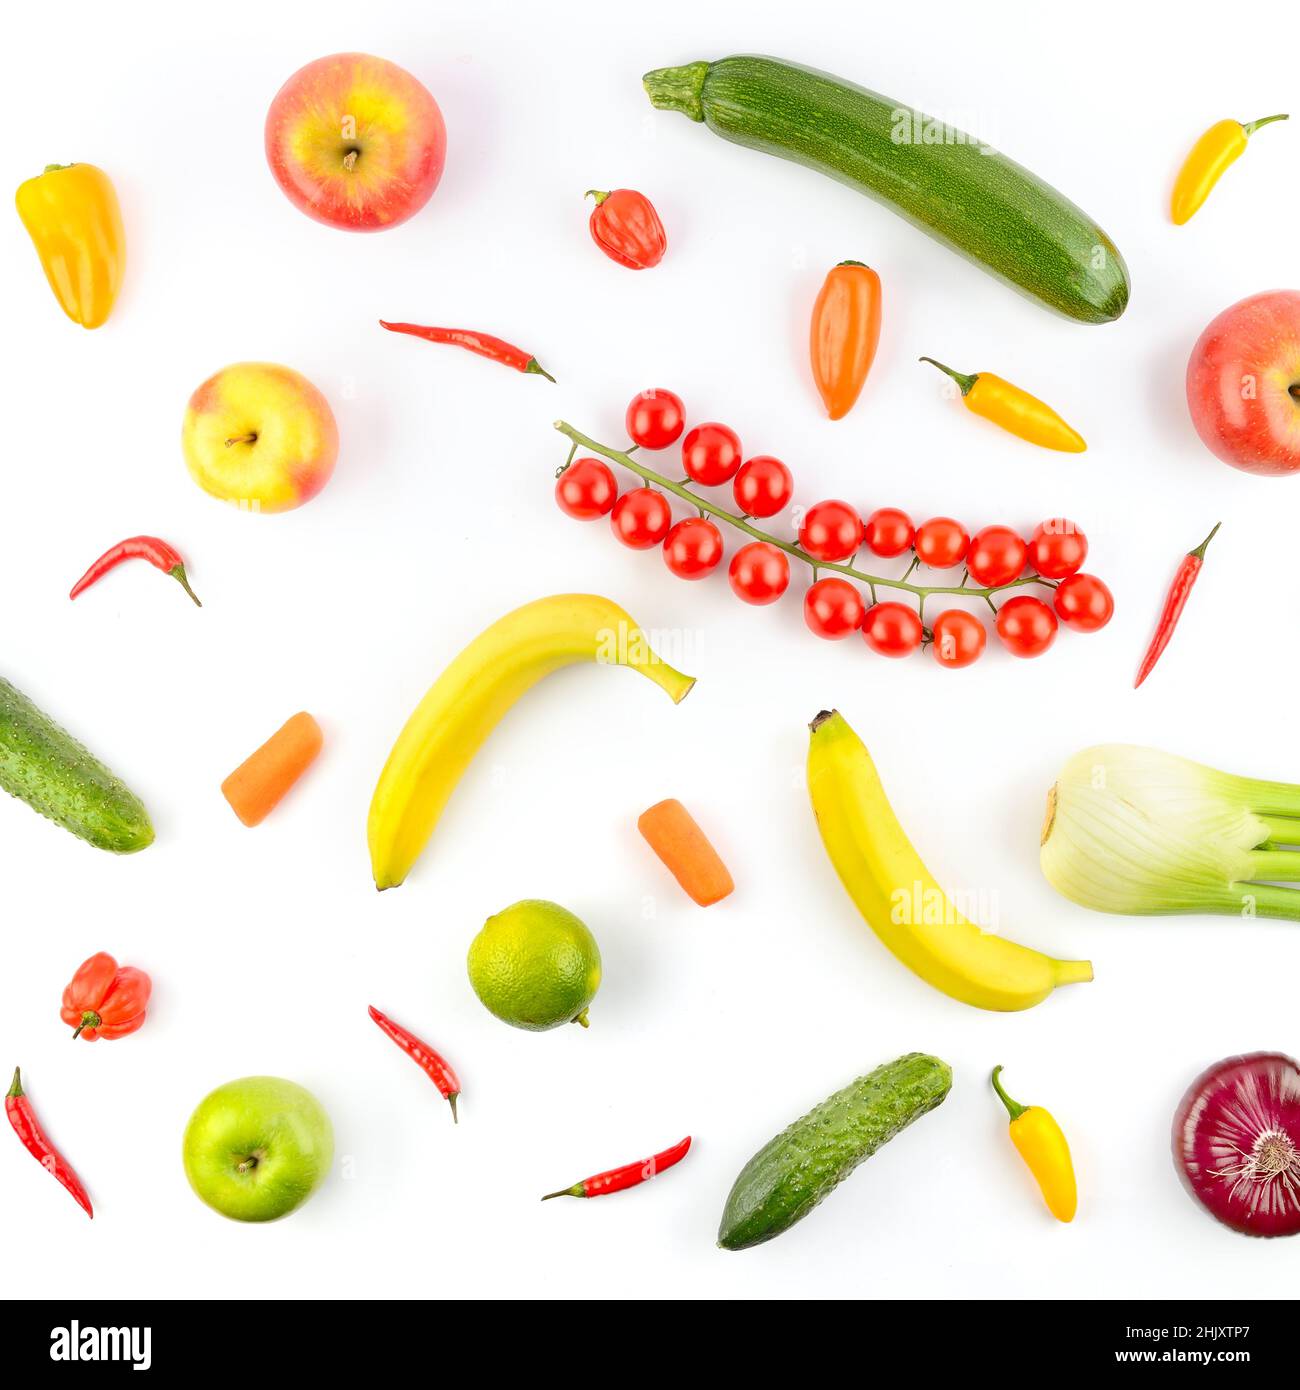 Motif carré de légumes et de fruits isolés sur fond blanc. Banque D'Images